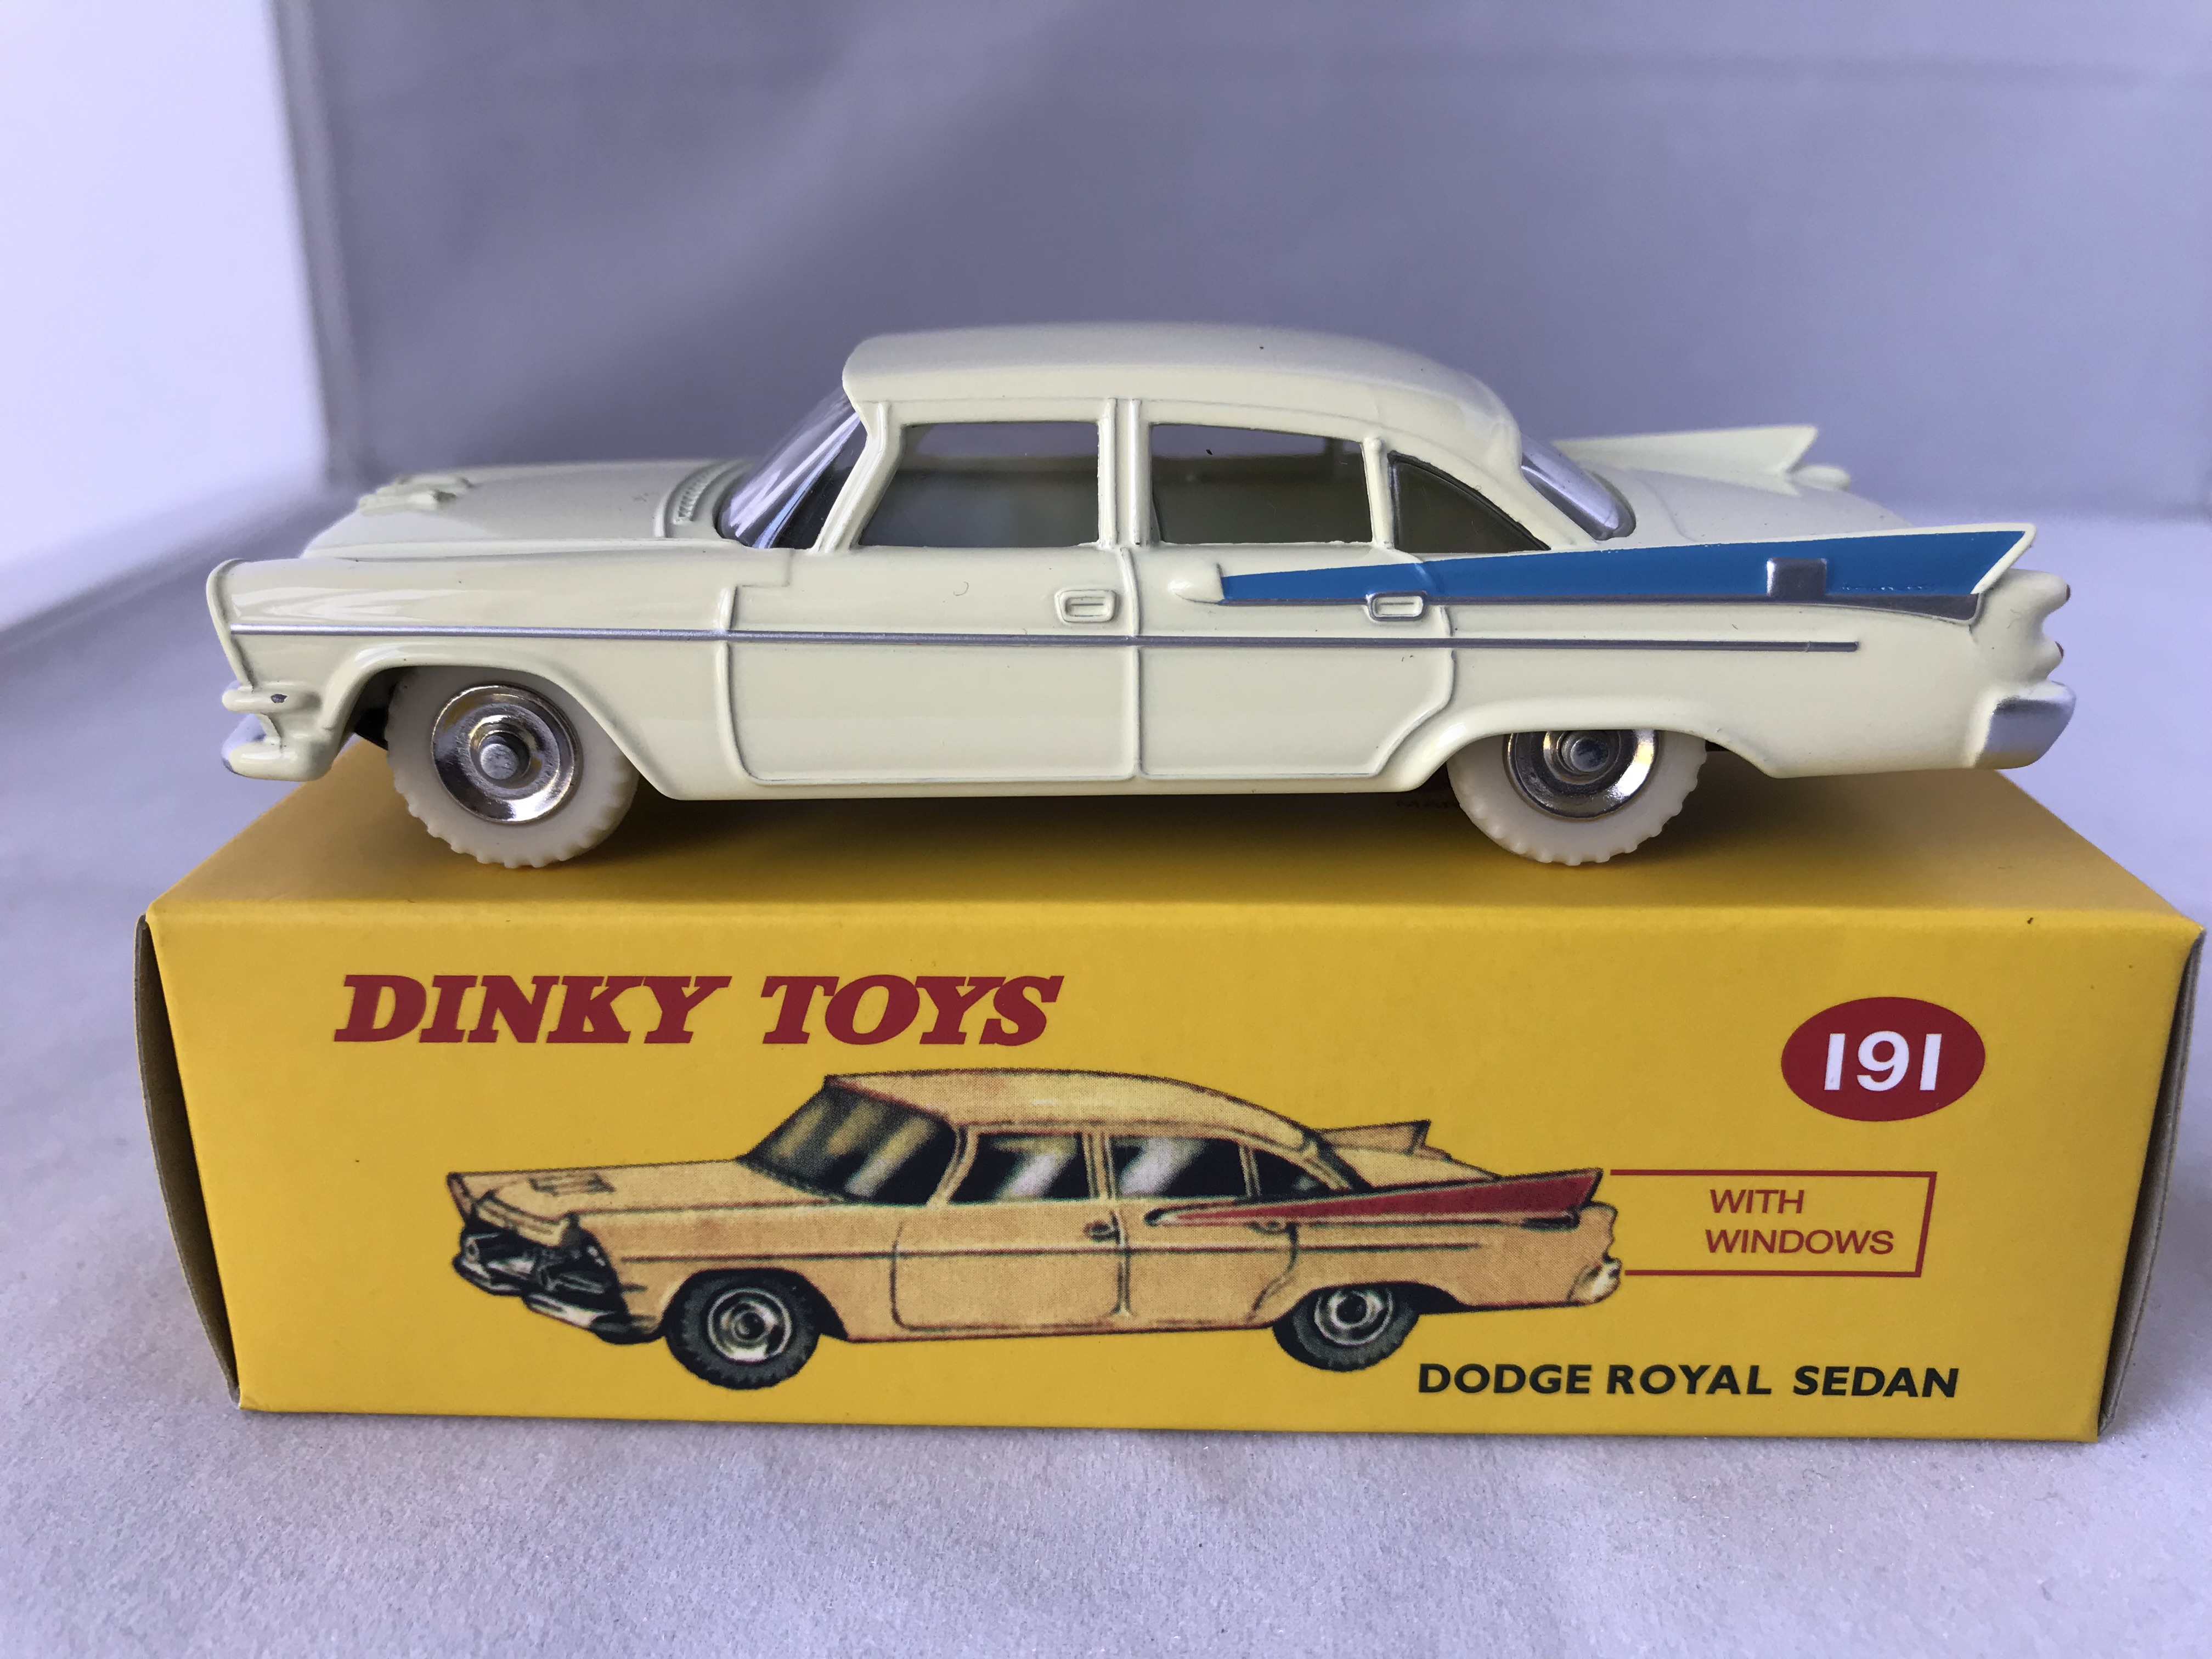 Atlas dinky toys dodge royal sedan ref 191 in box 